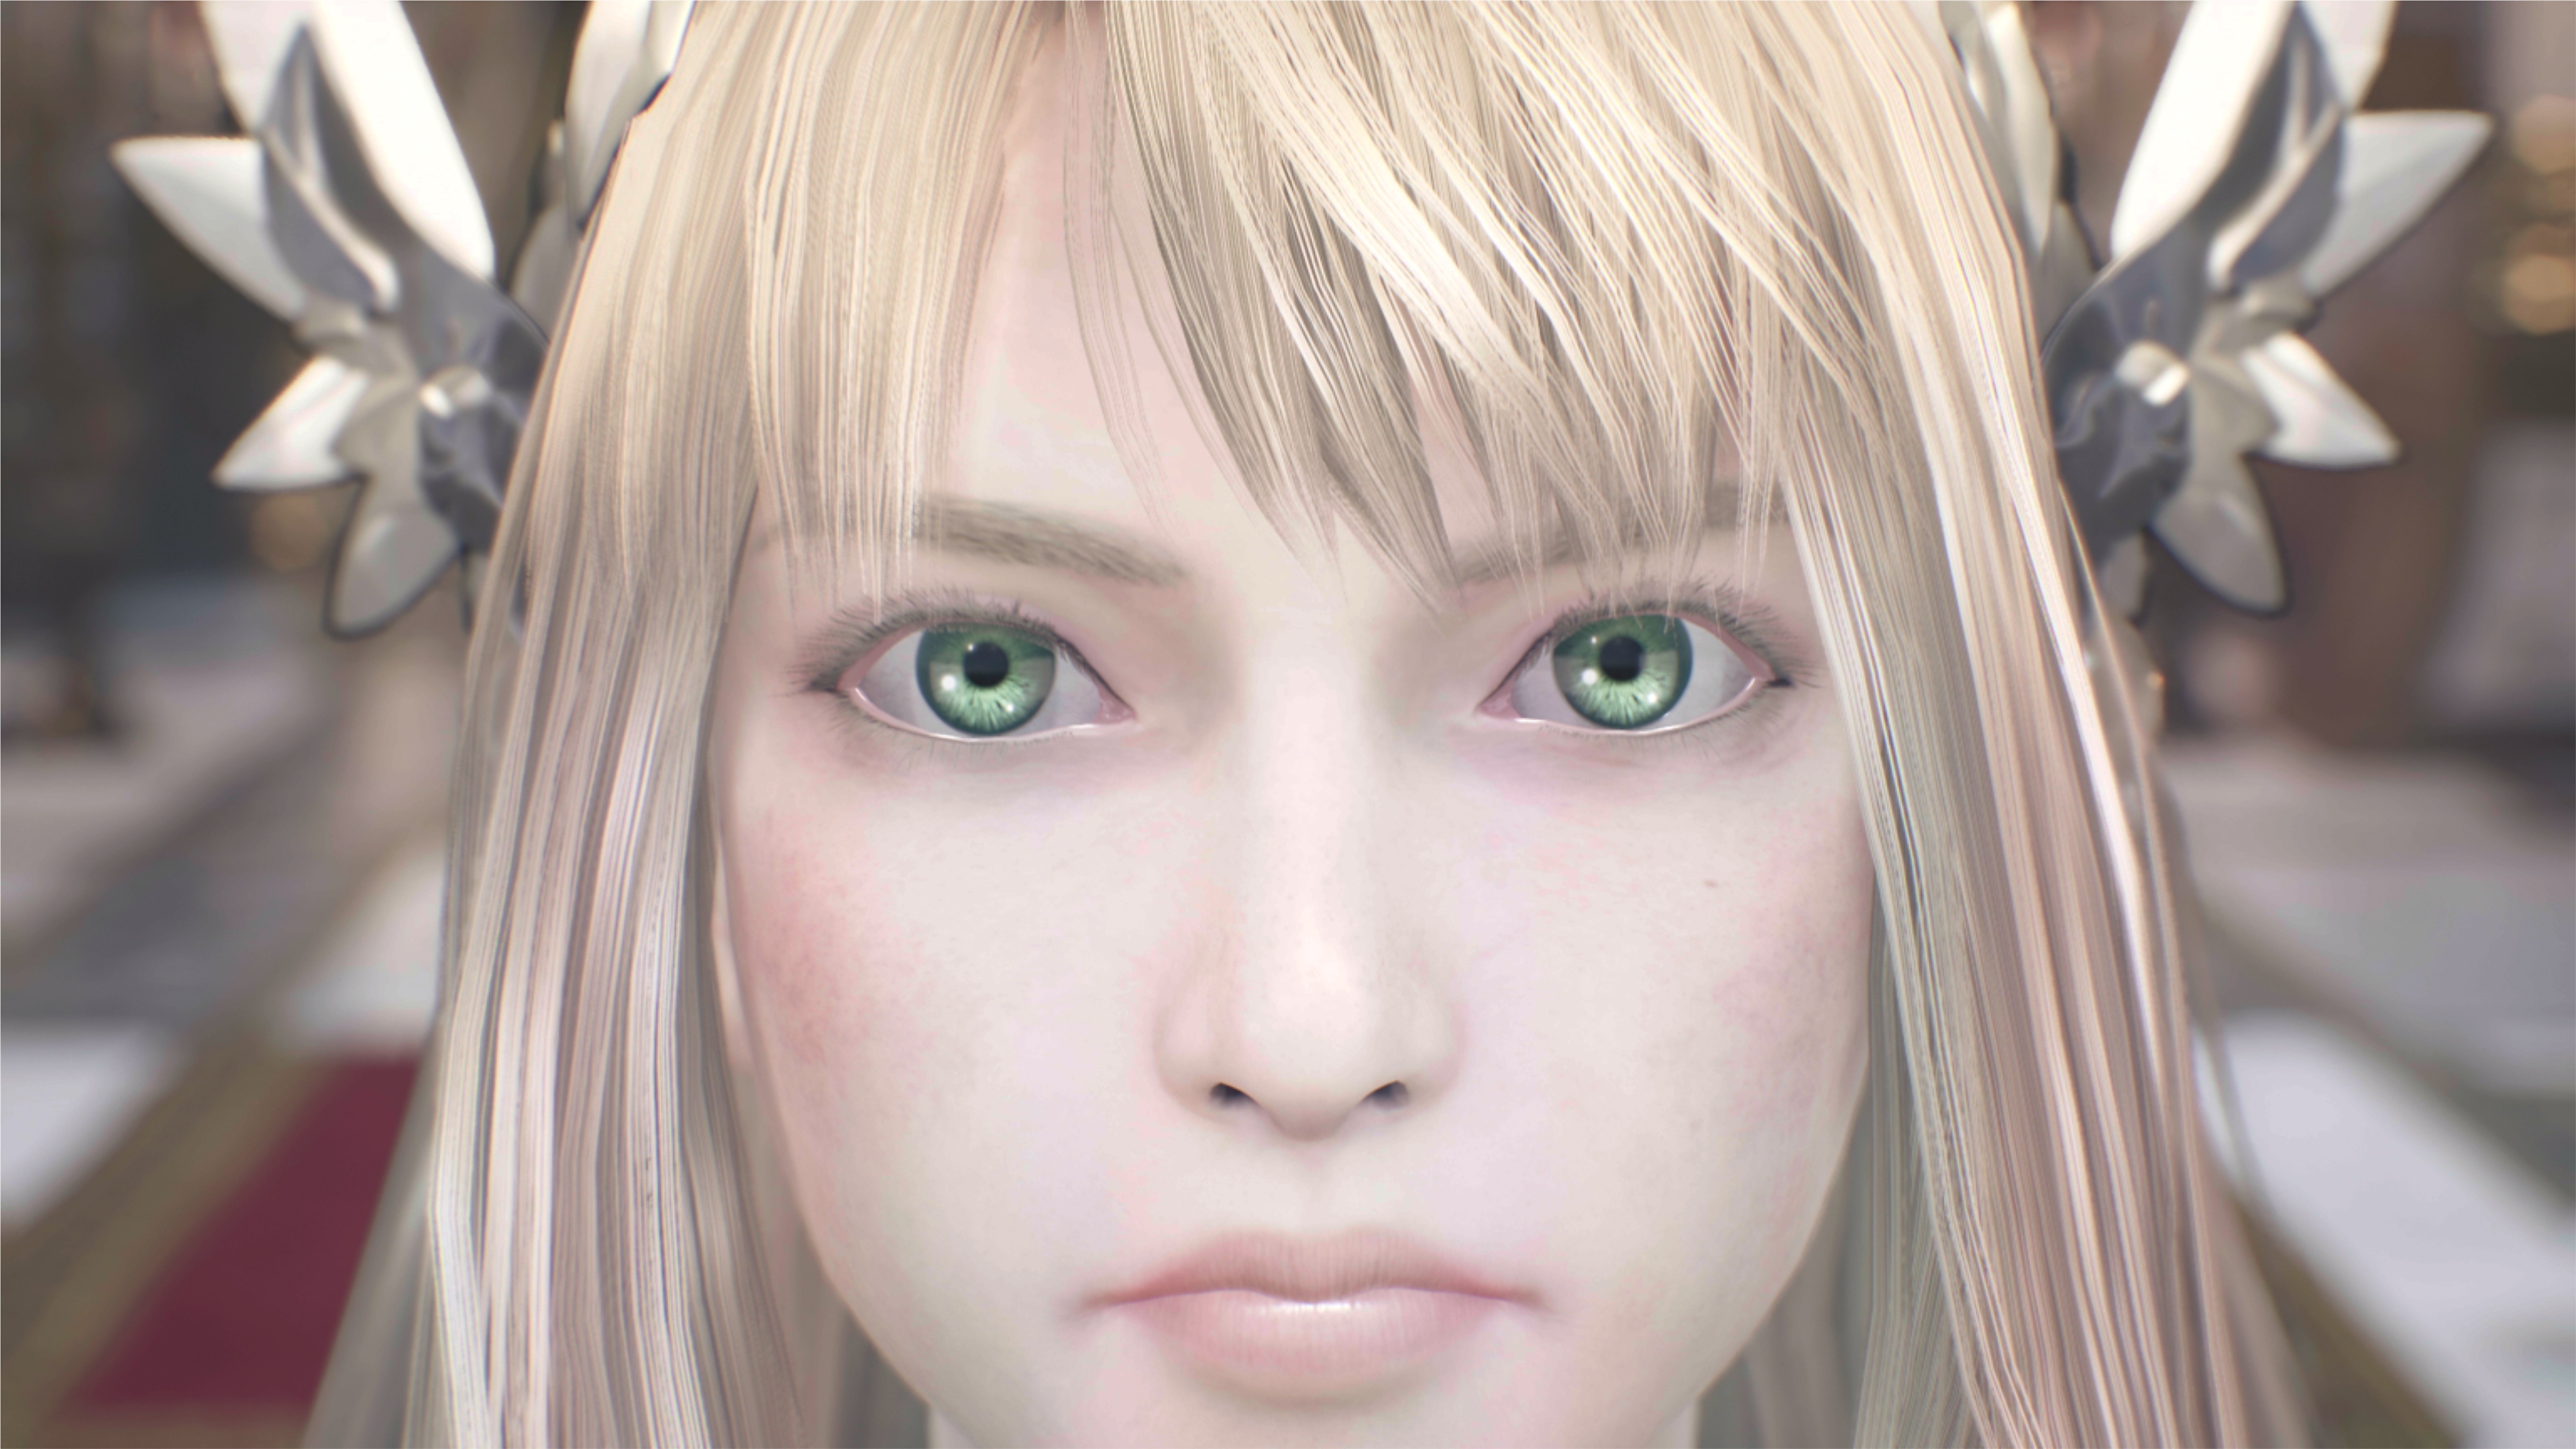 Capture d'écran de Valkyrie Elysium - plan rapproché d'un personnage aux cheveux blonds et aux yeux verts